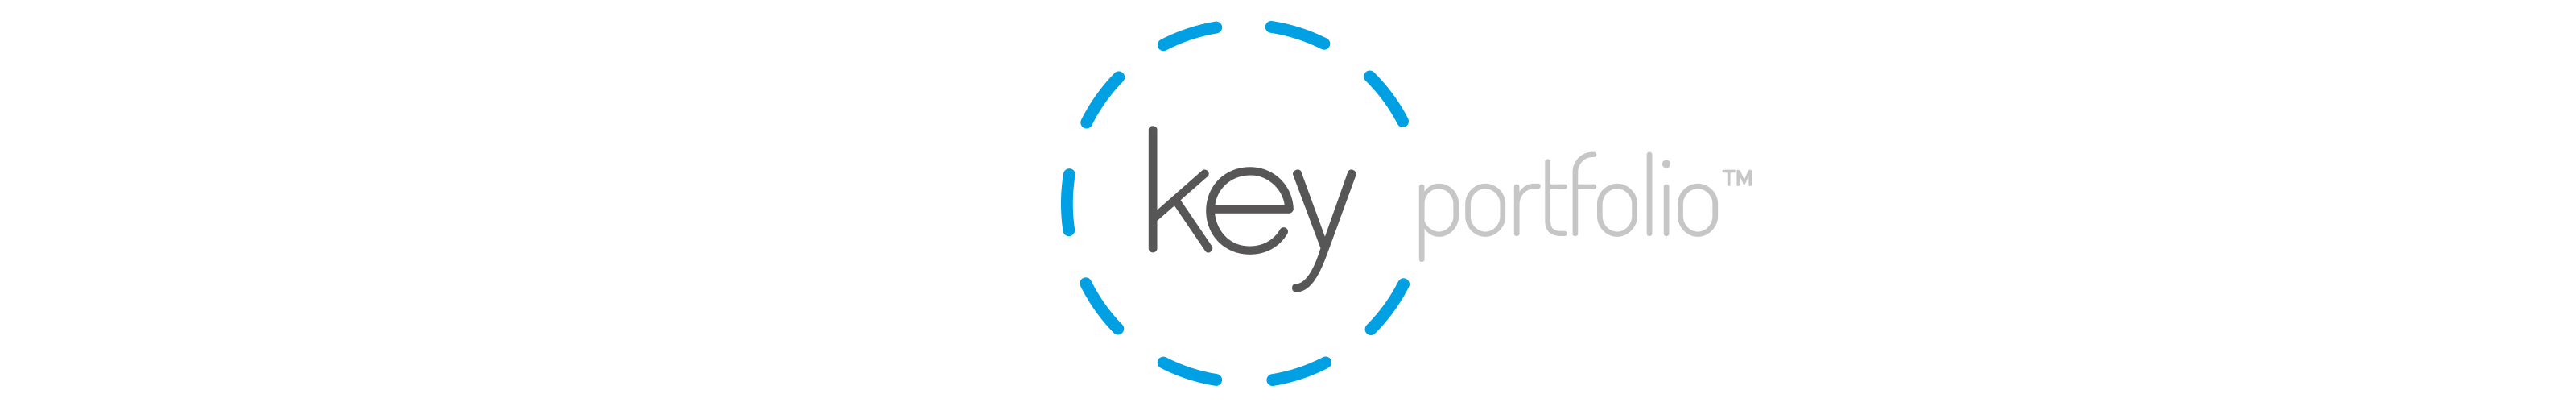 kp-logo